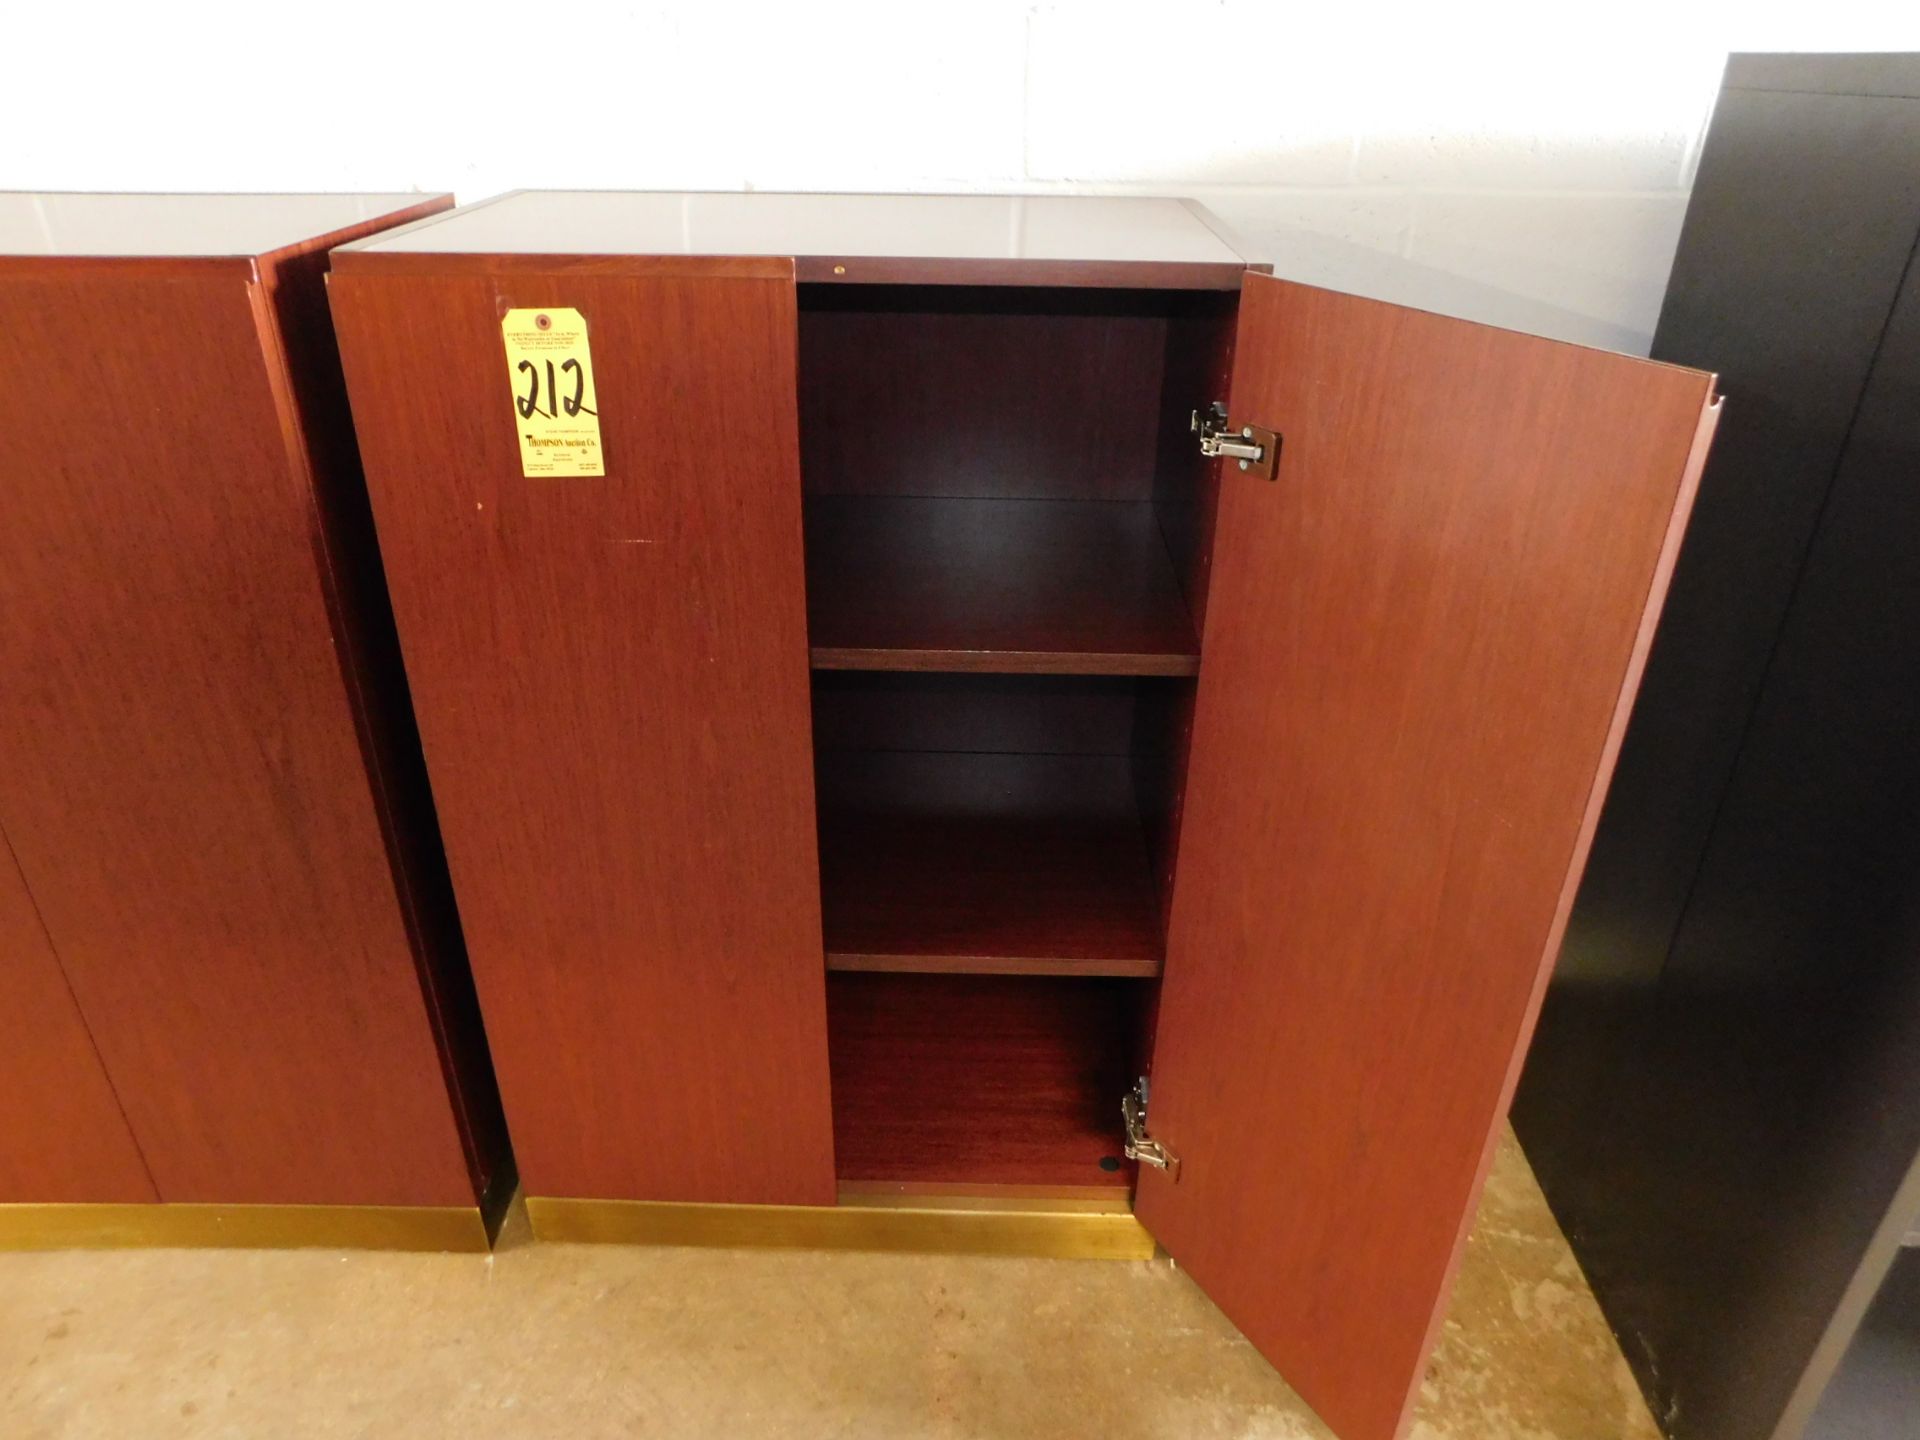 2-Door Wooden Storage Cabinet, 32" W x 48" H x 20" D